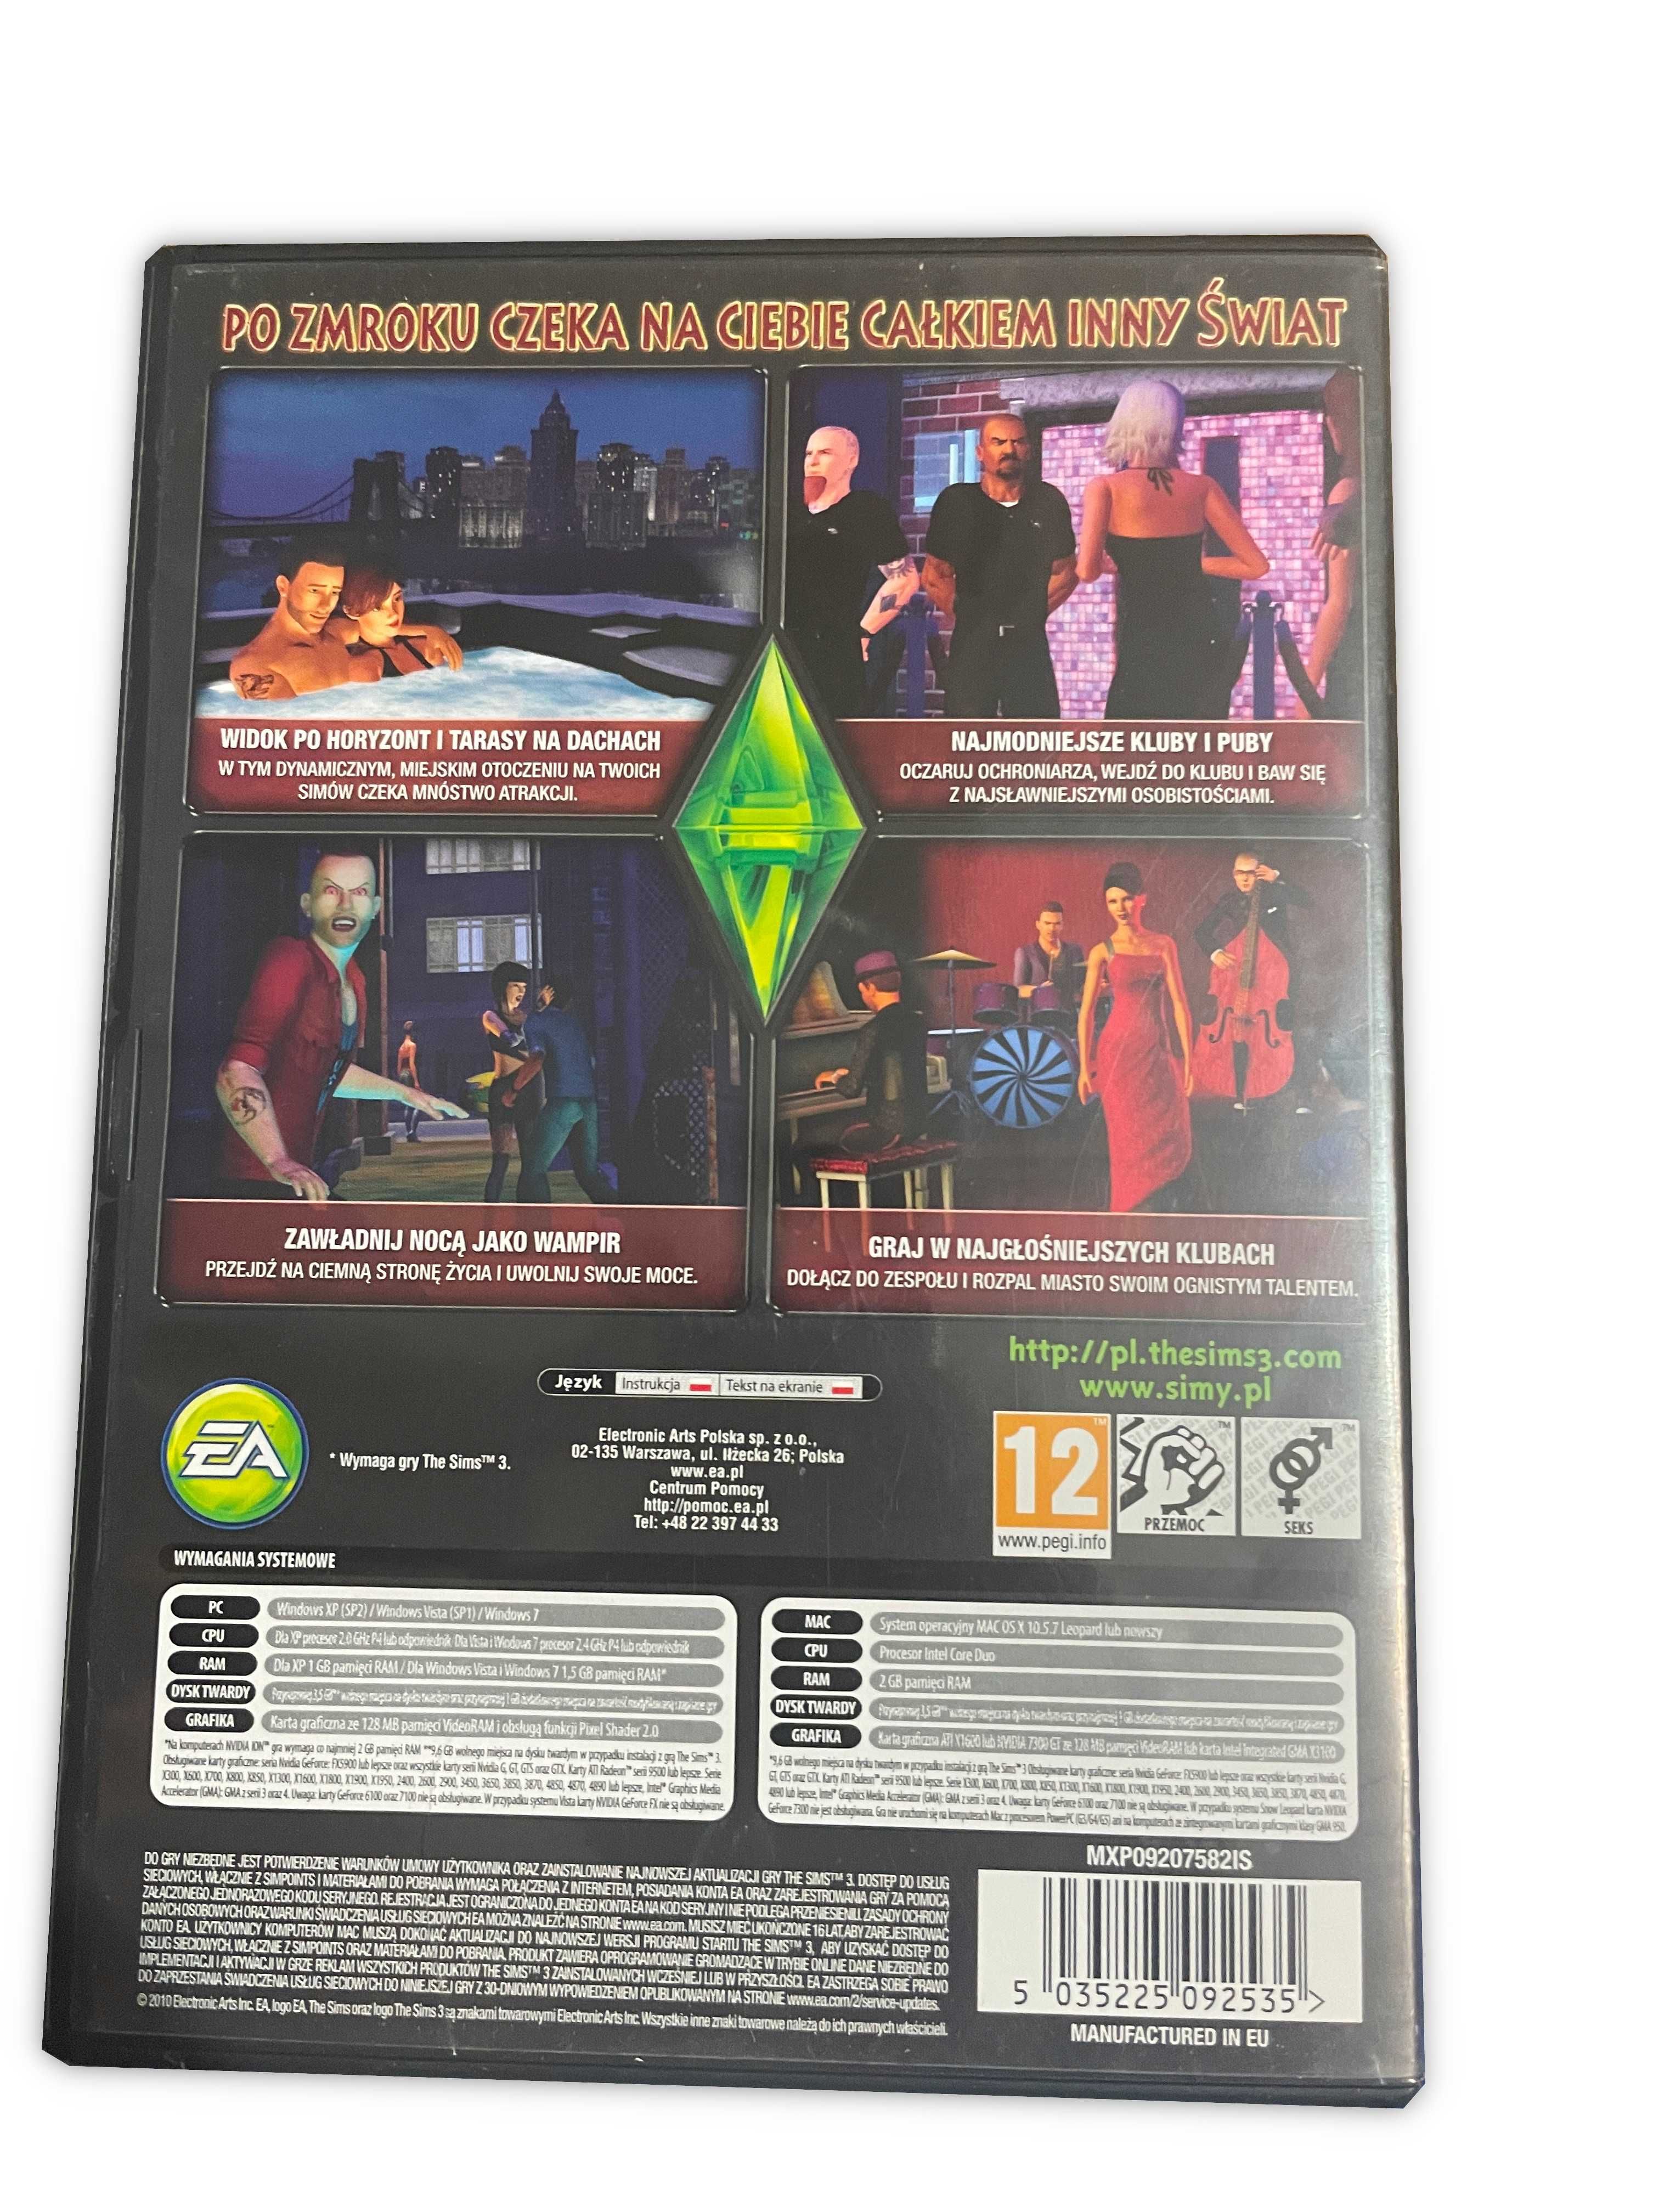 The Sims 3 + 3 dodatki PC PL